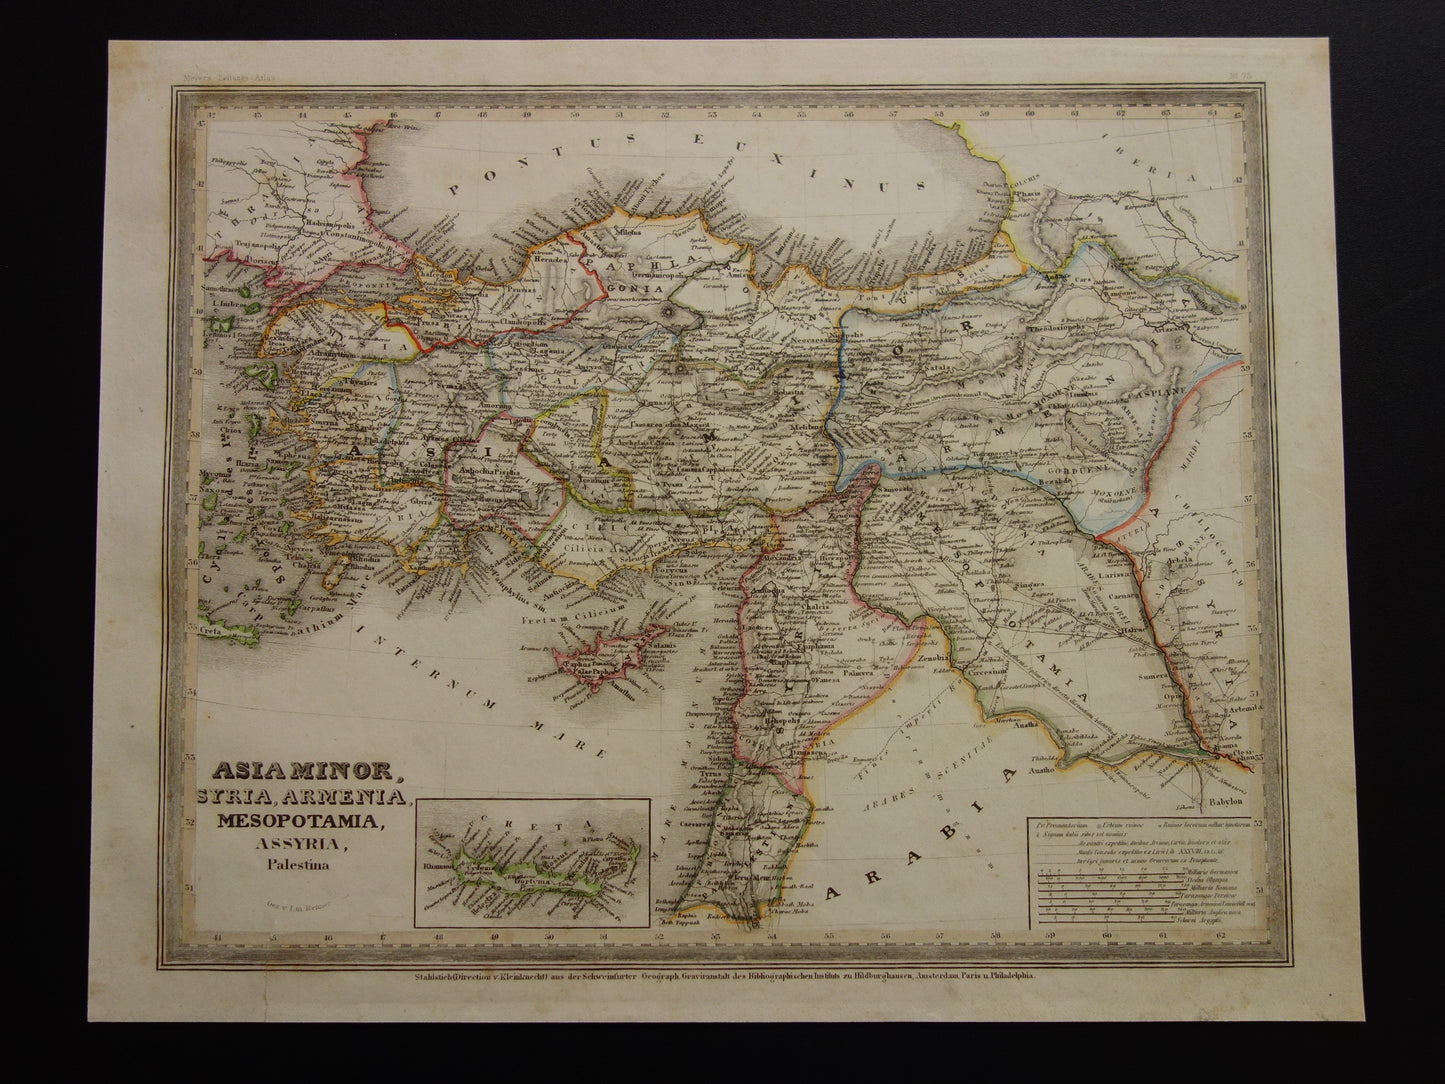 Asia Minor Syria Armenia Mesopotamia Assyria Palestina Meyer's Zeitungs Atlas nr 75